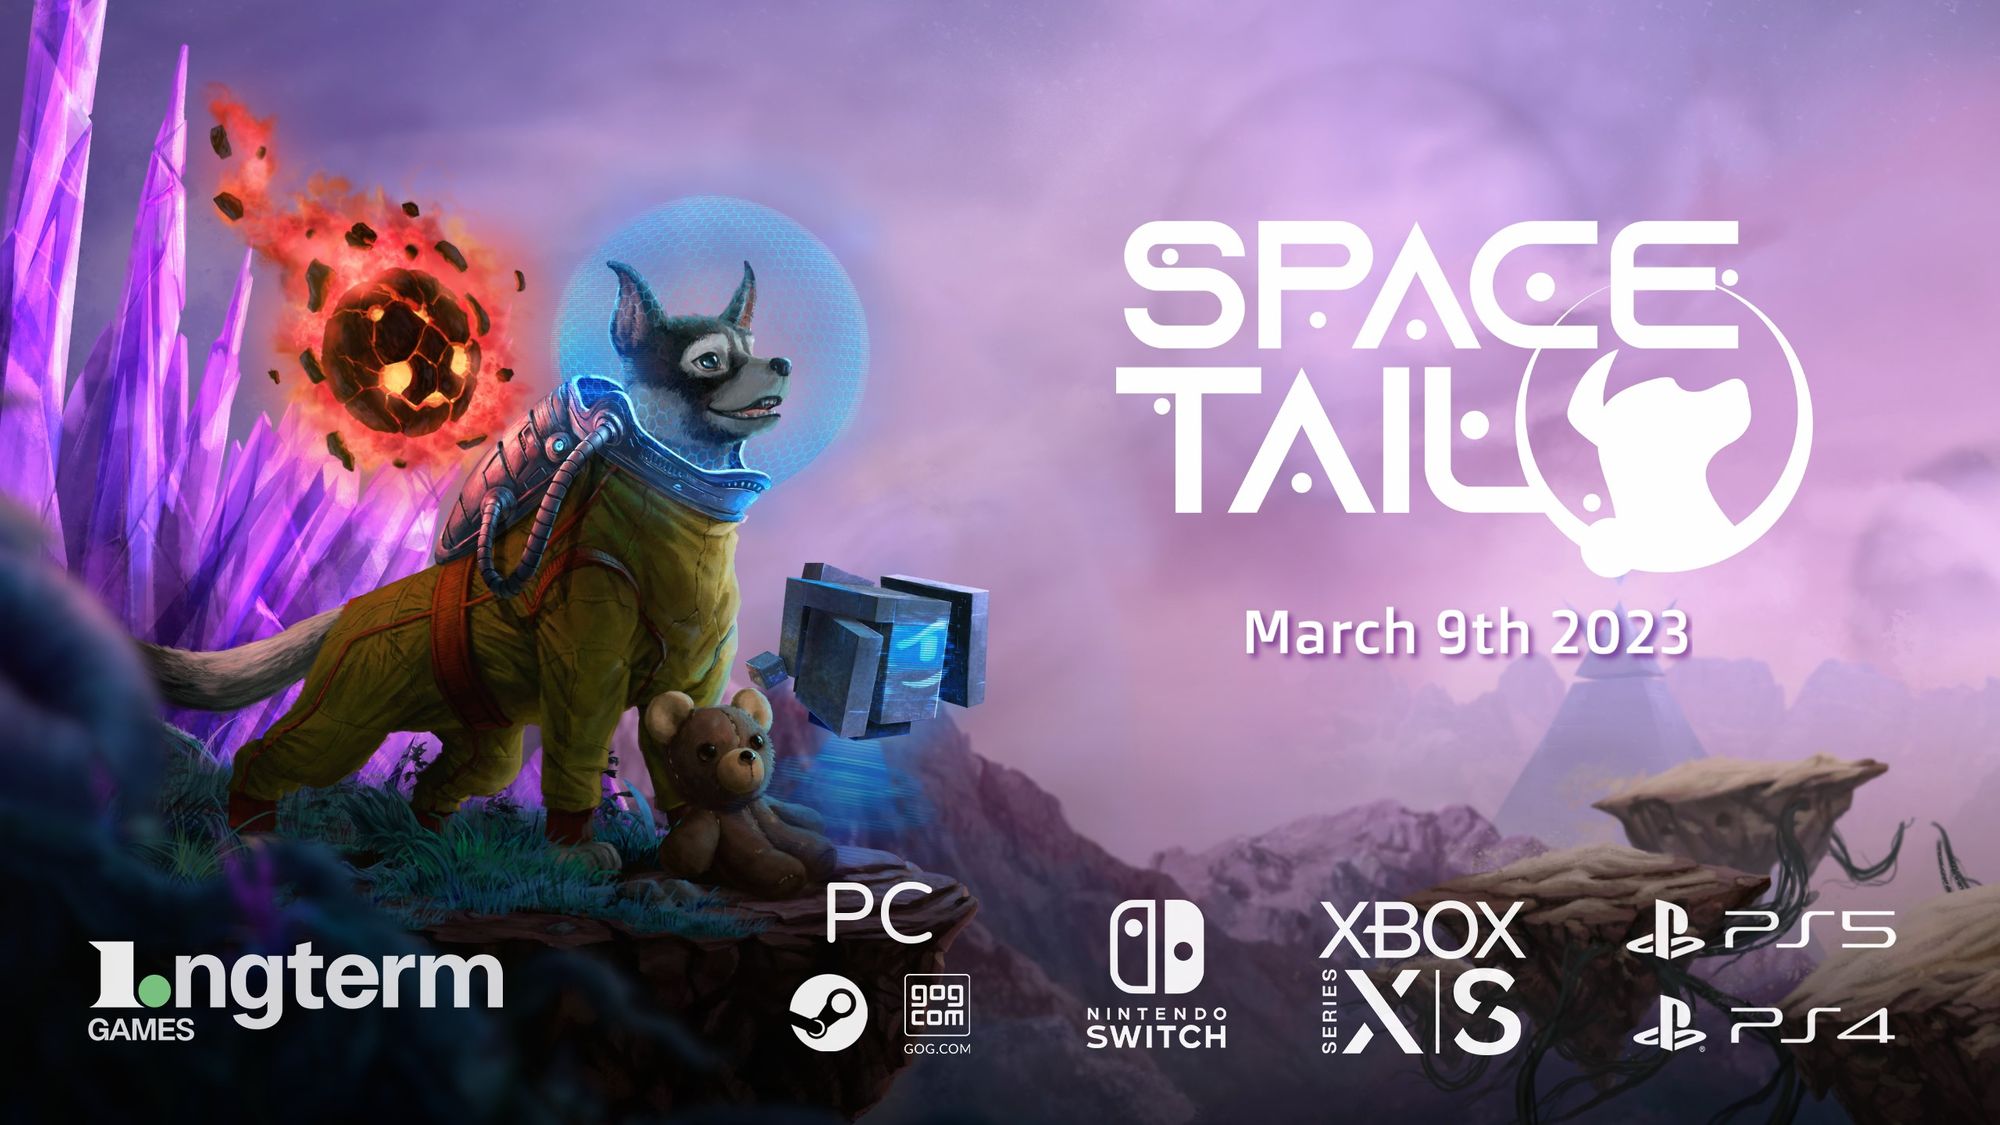 Gra Space Tail zadebiutowała na konsolach PlayStation i Xbox w pakiecie Ultimate Edition